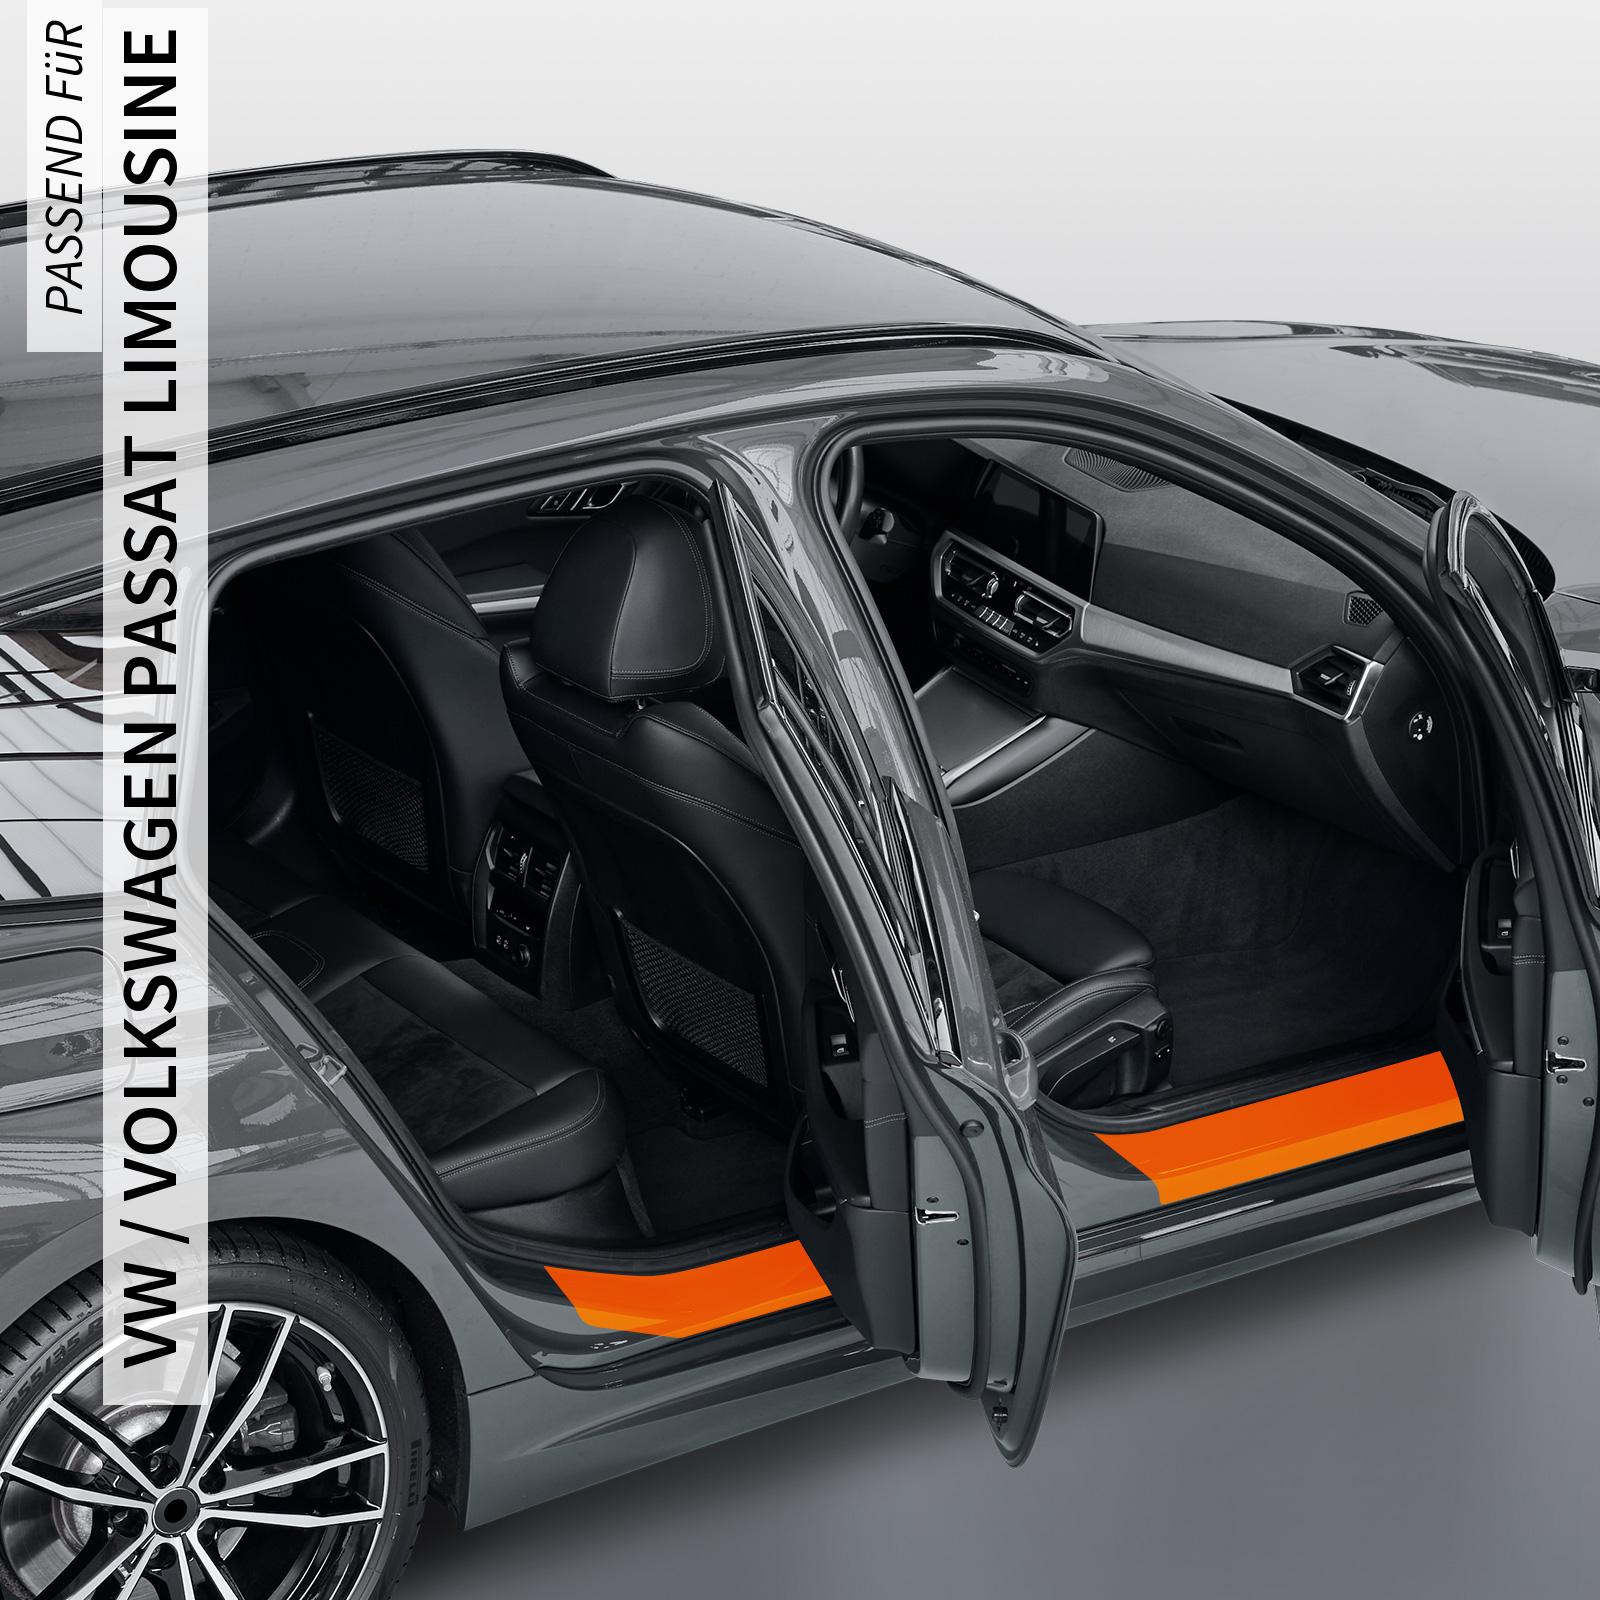 Einstiegsleistenschutzfolie für VW / Volkswagen Passat Limousine B7, Typ 3C, BJ 10/2010-11/2014